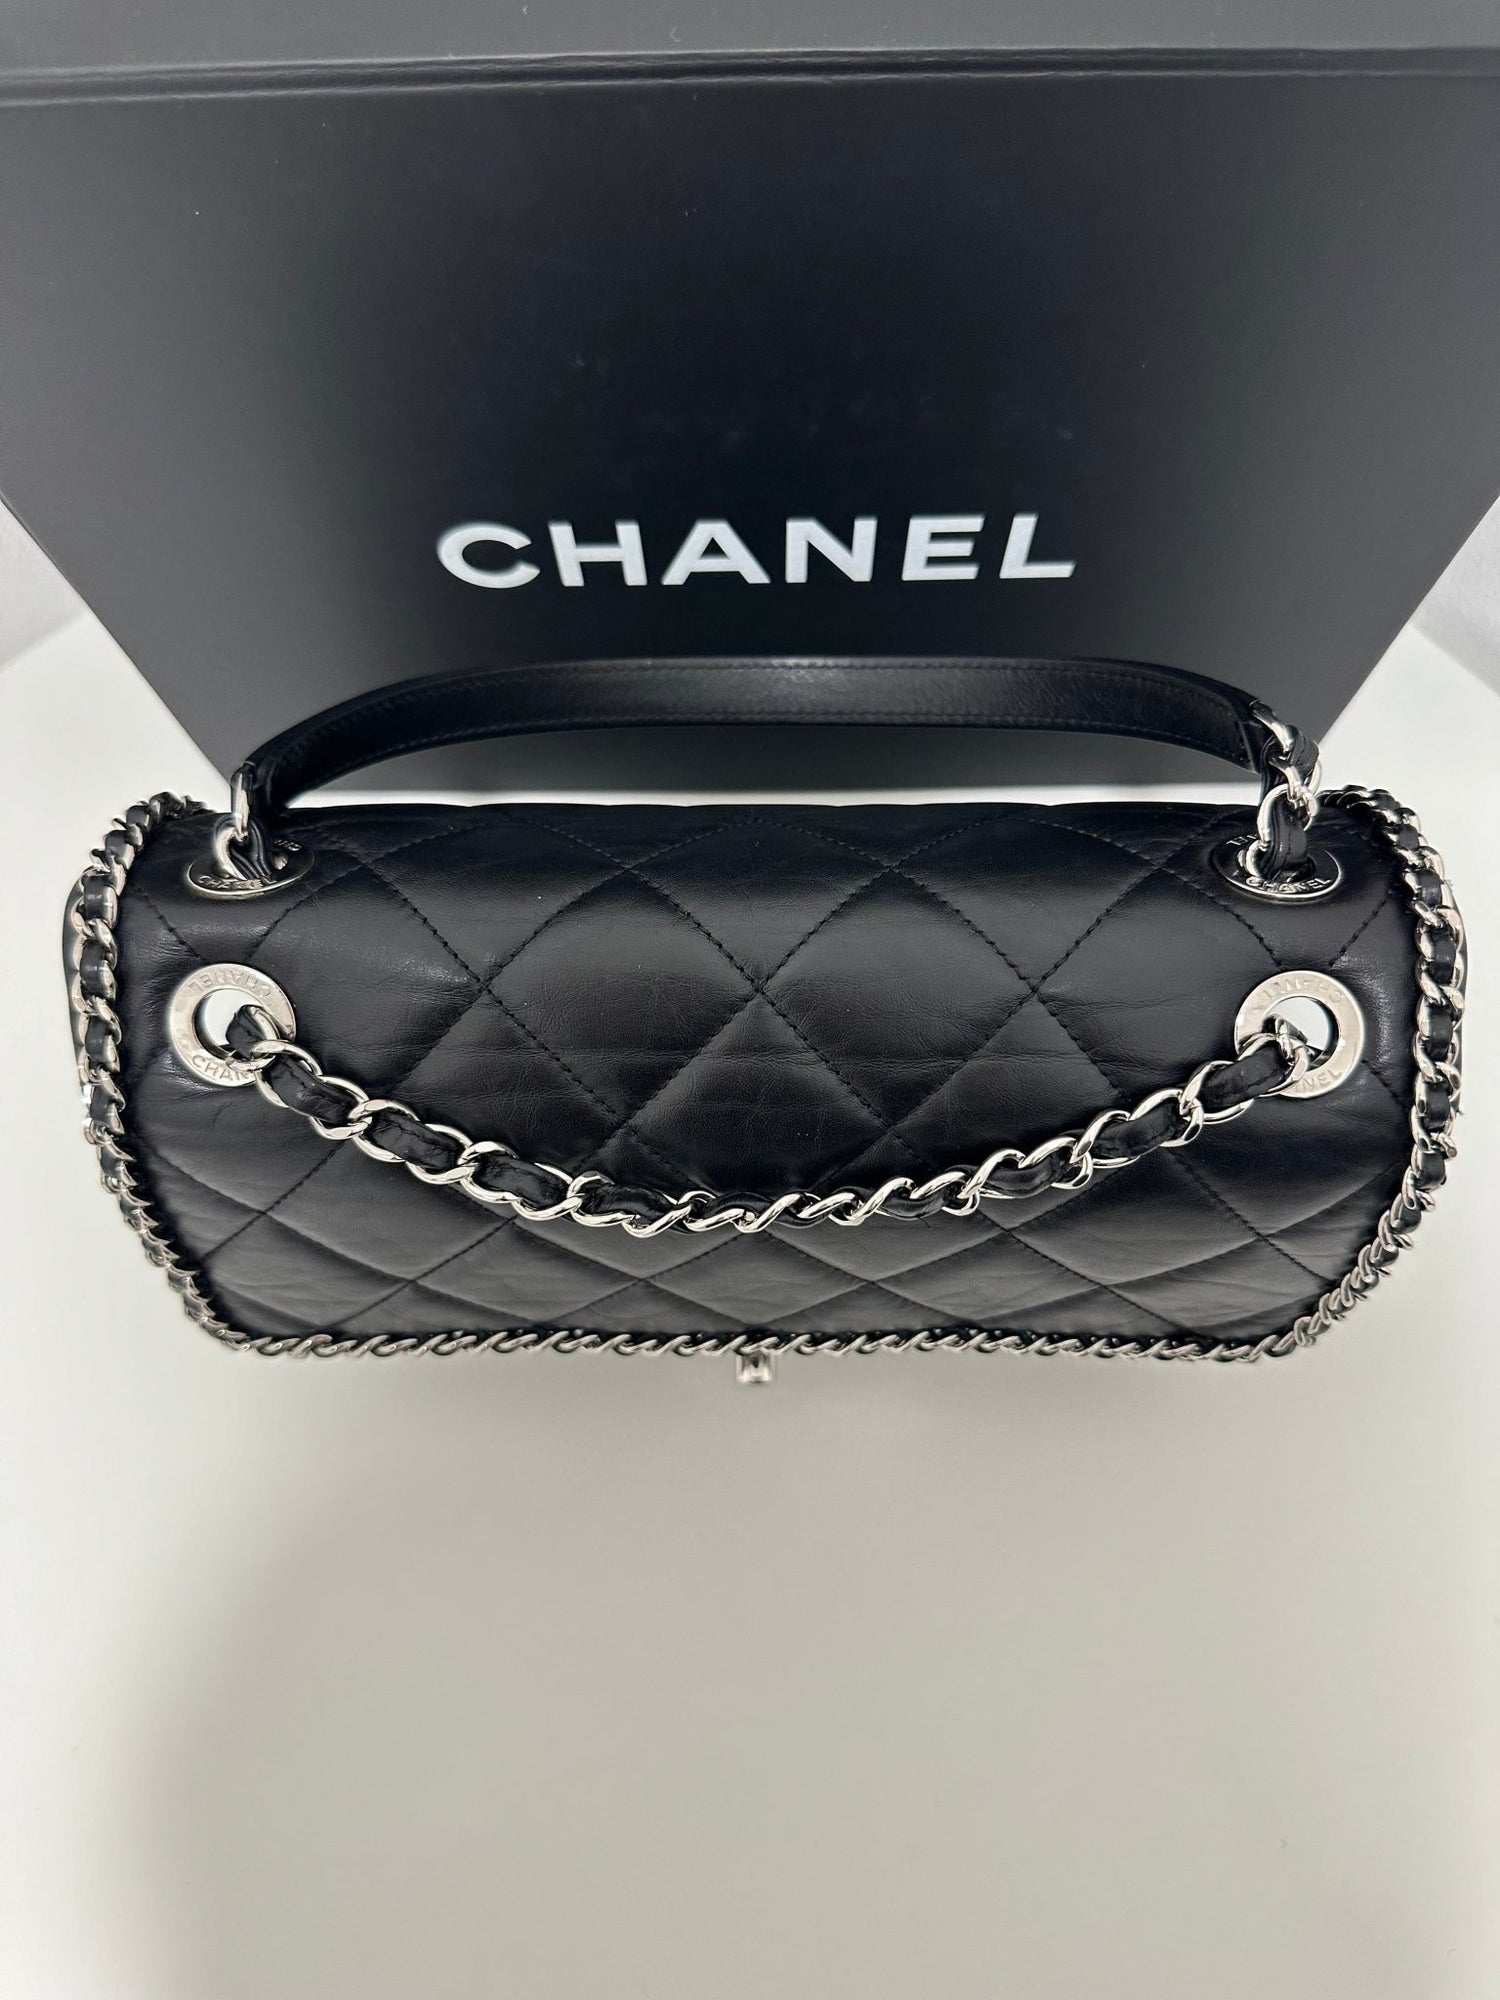 Chanel - Sac Chain Around noir - Les Folies d&